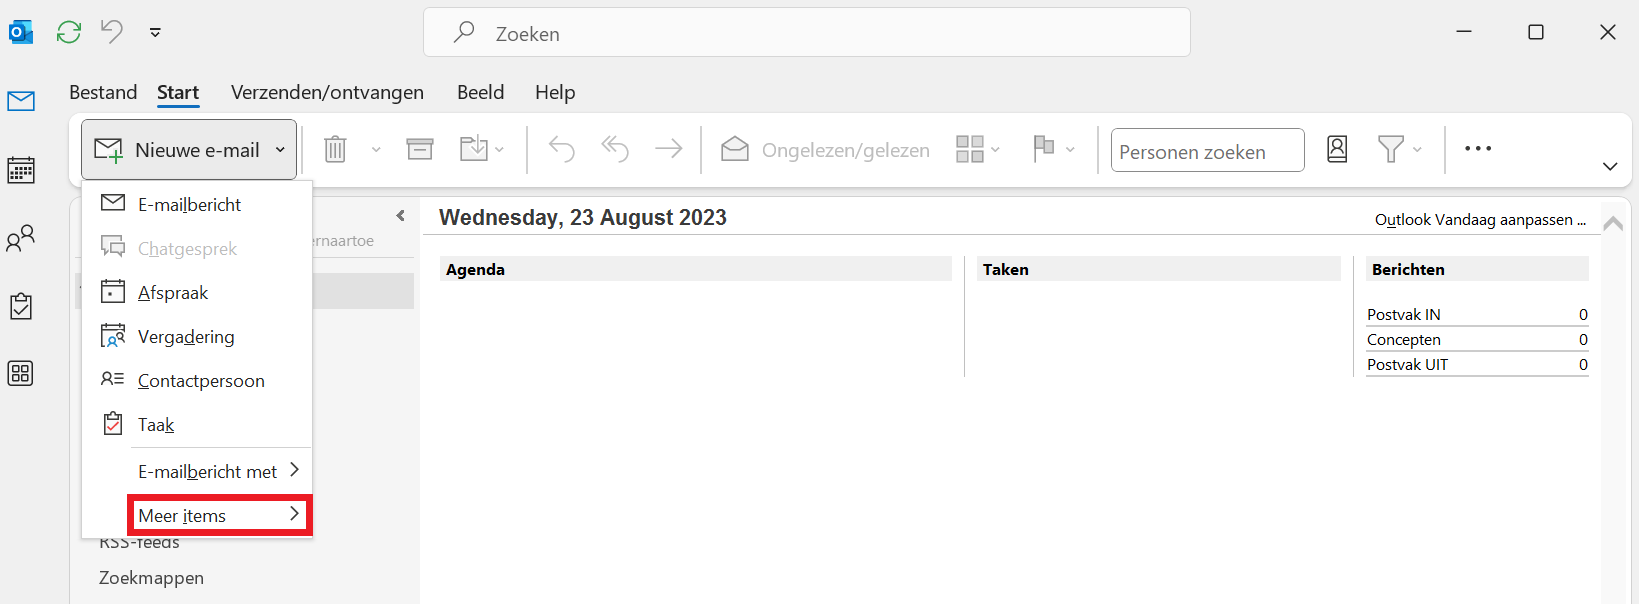 Outlook - Dropdownmenu nieuwe e-mail - Meer items.png